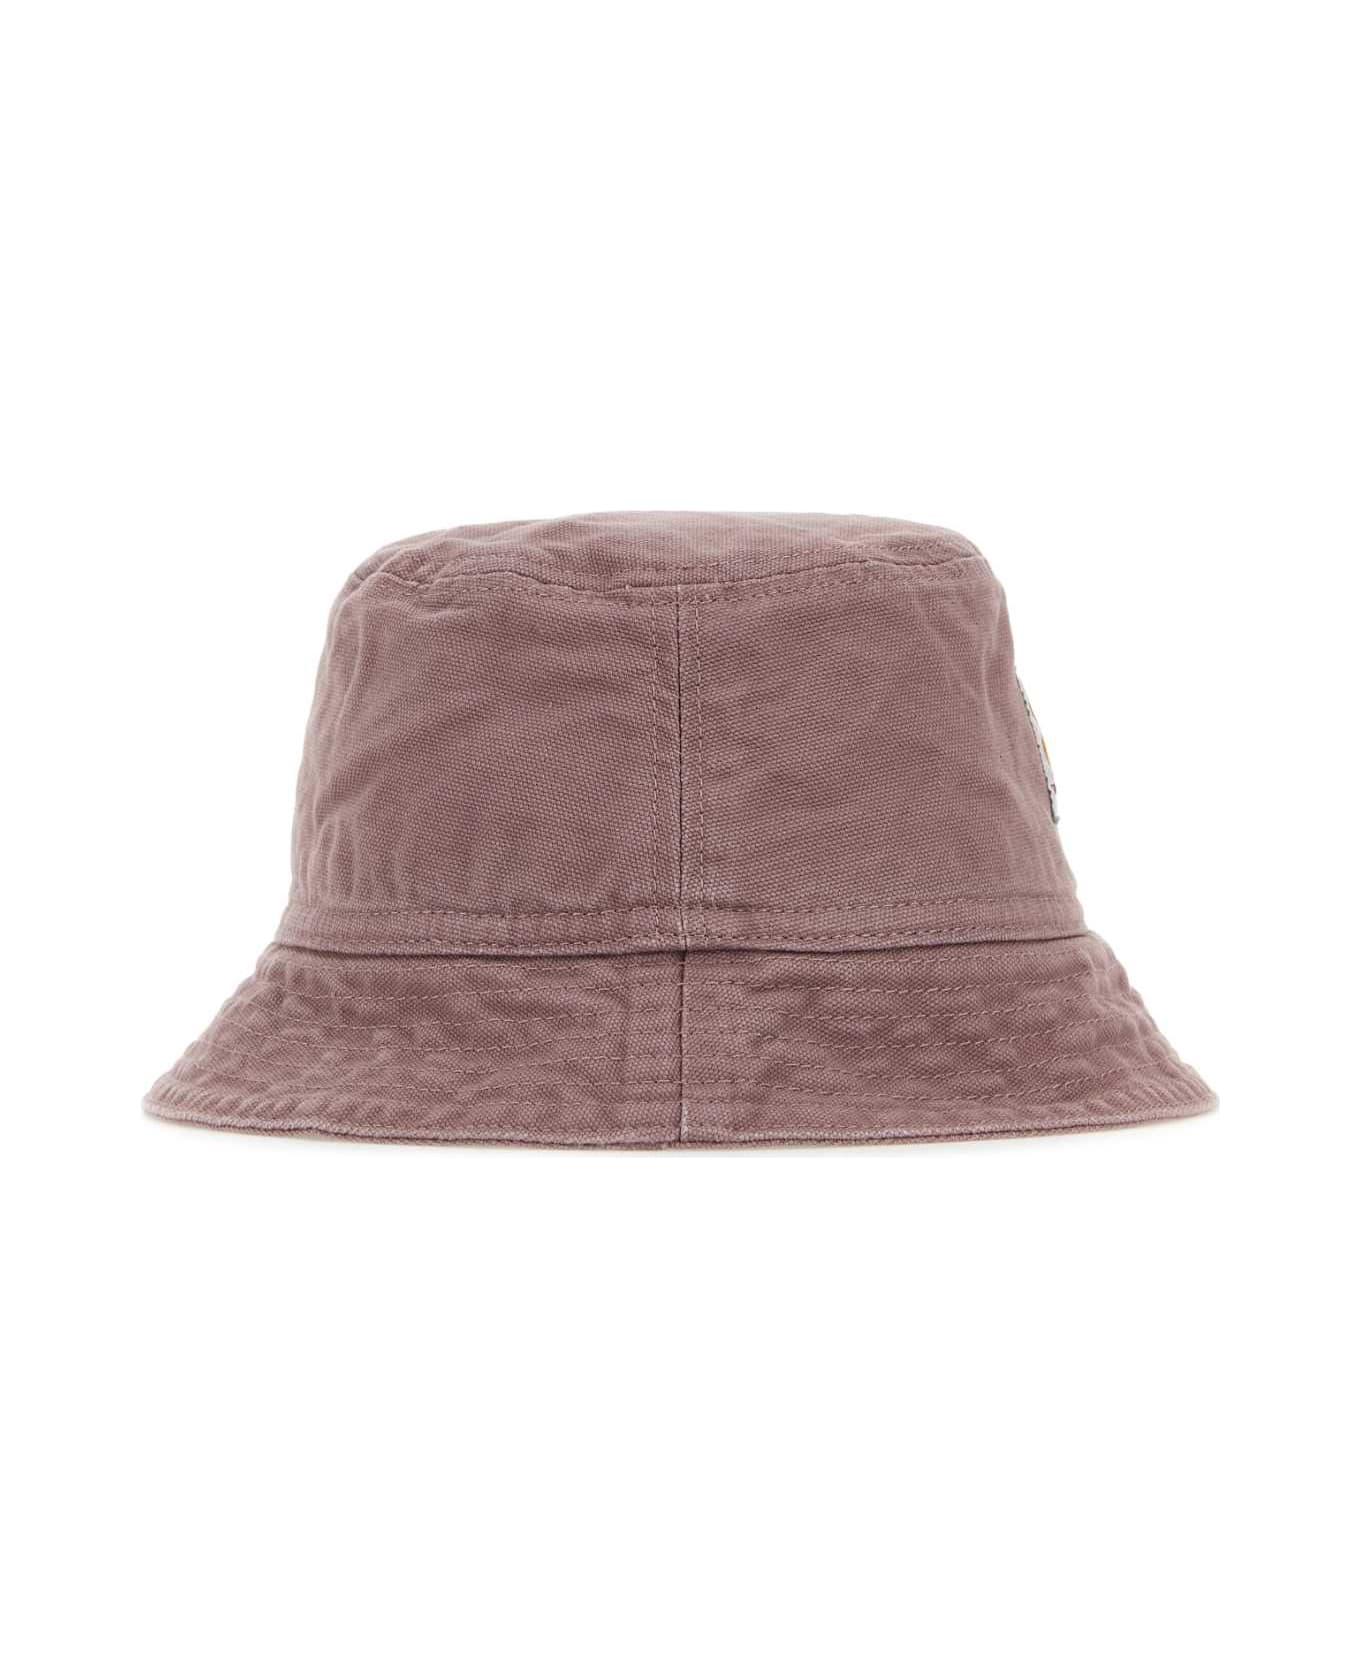 Carhartt Antiqued Pink Cotton Bayfield Bucket Hat - BLK